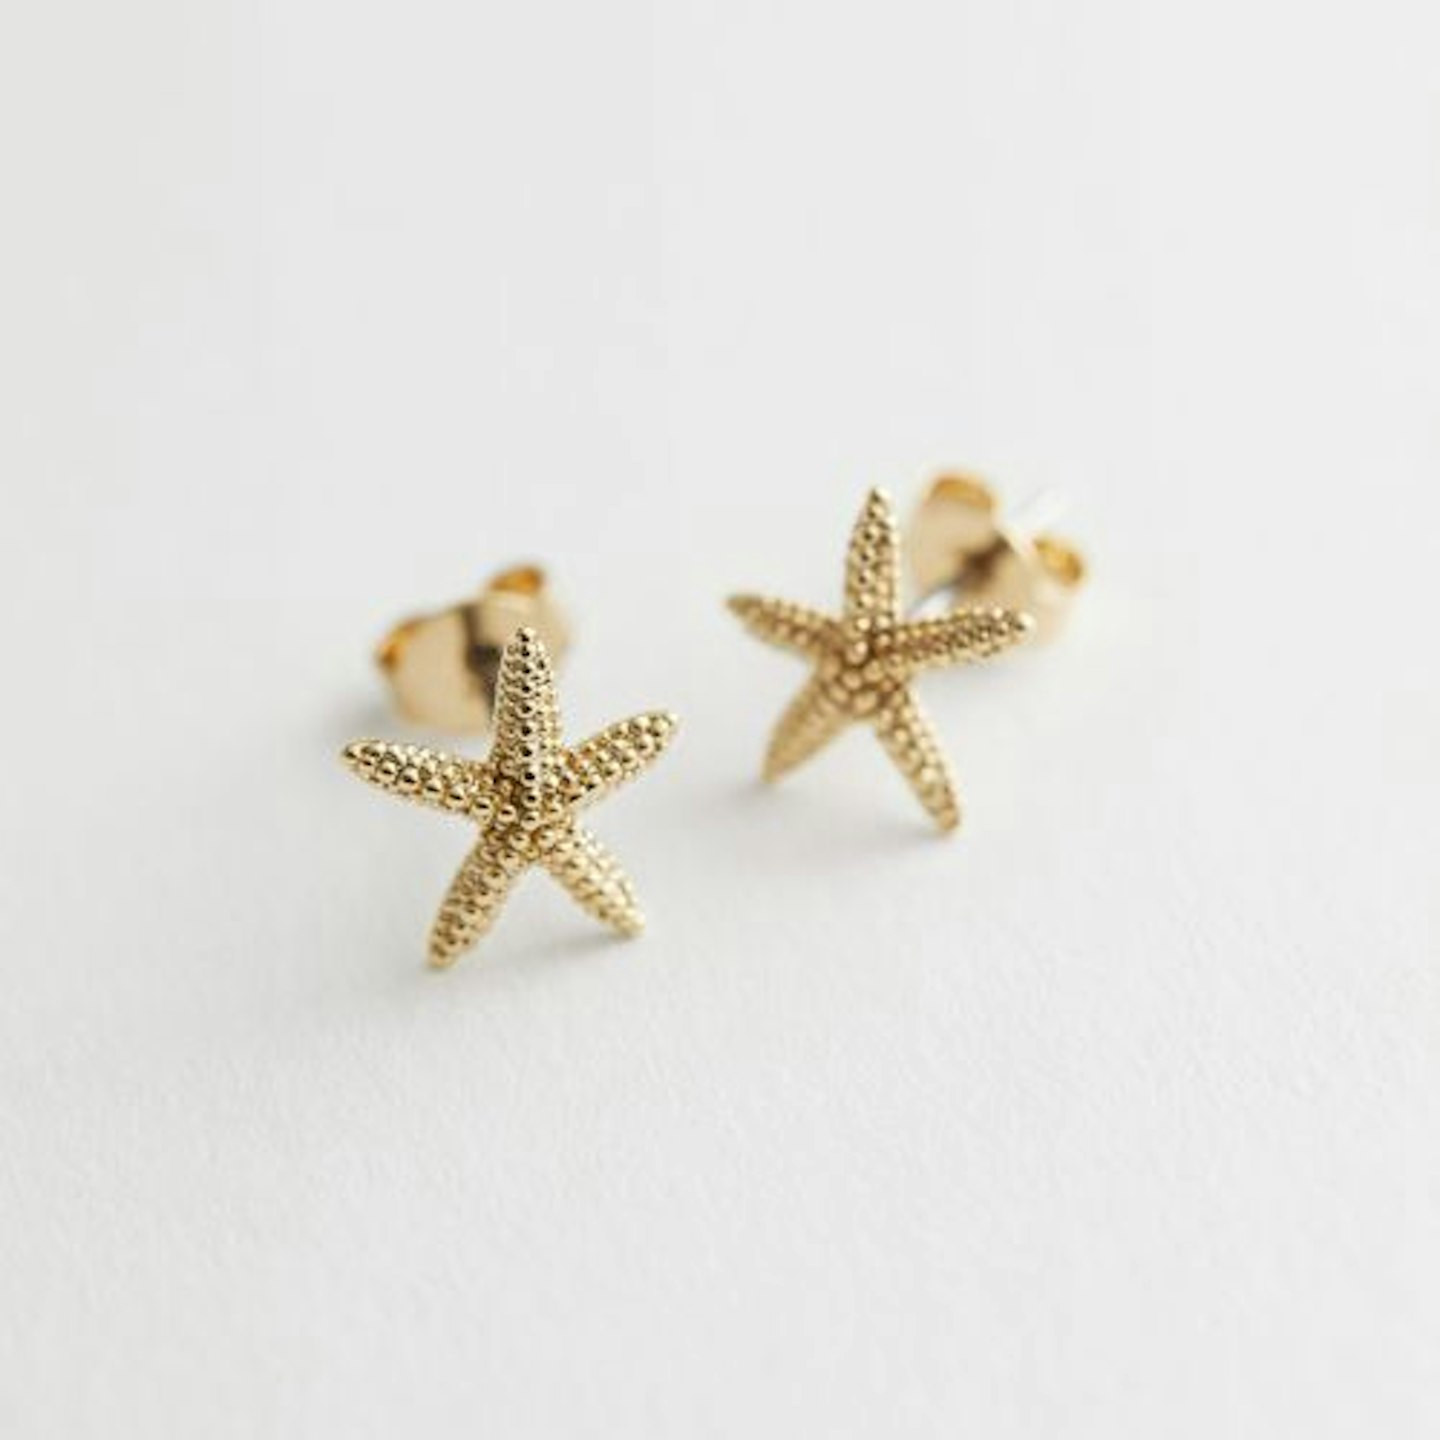 Starfish Pendant Stud Earrings